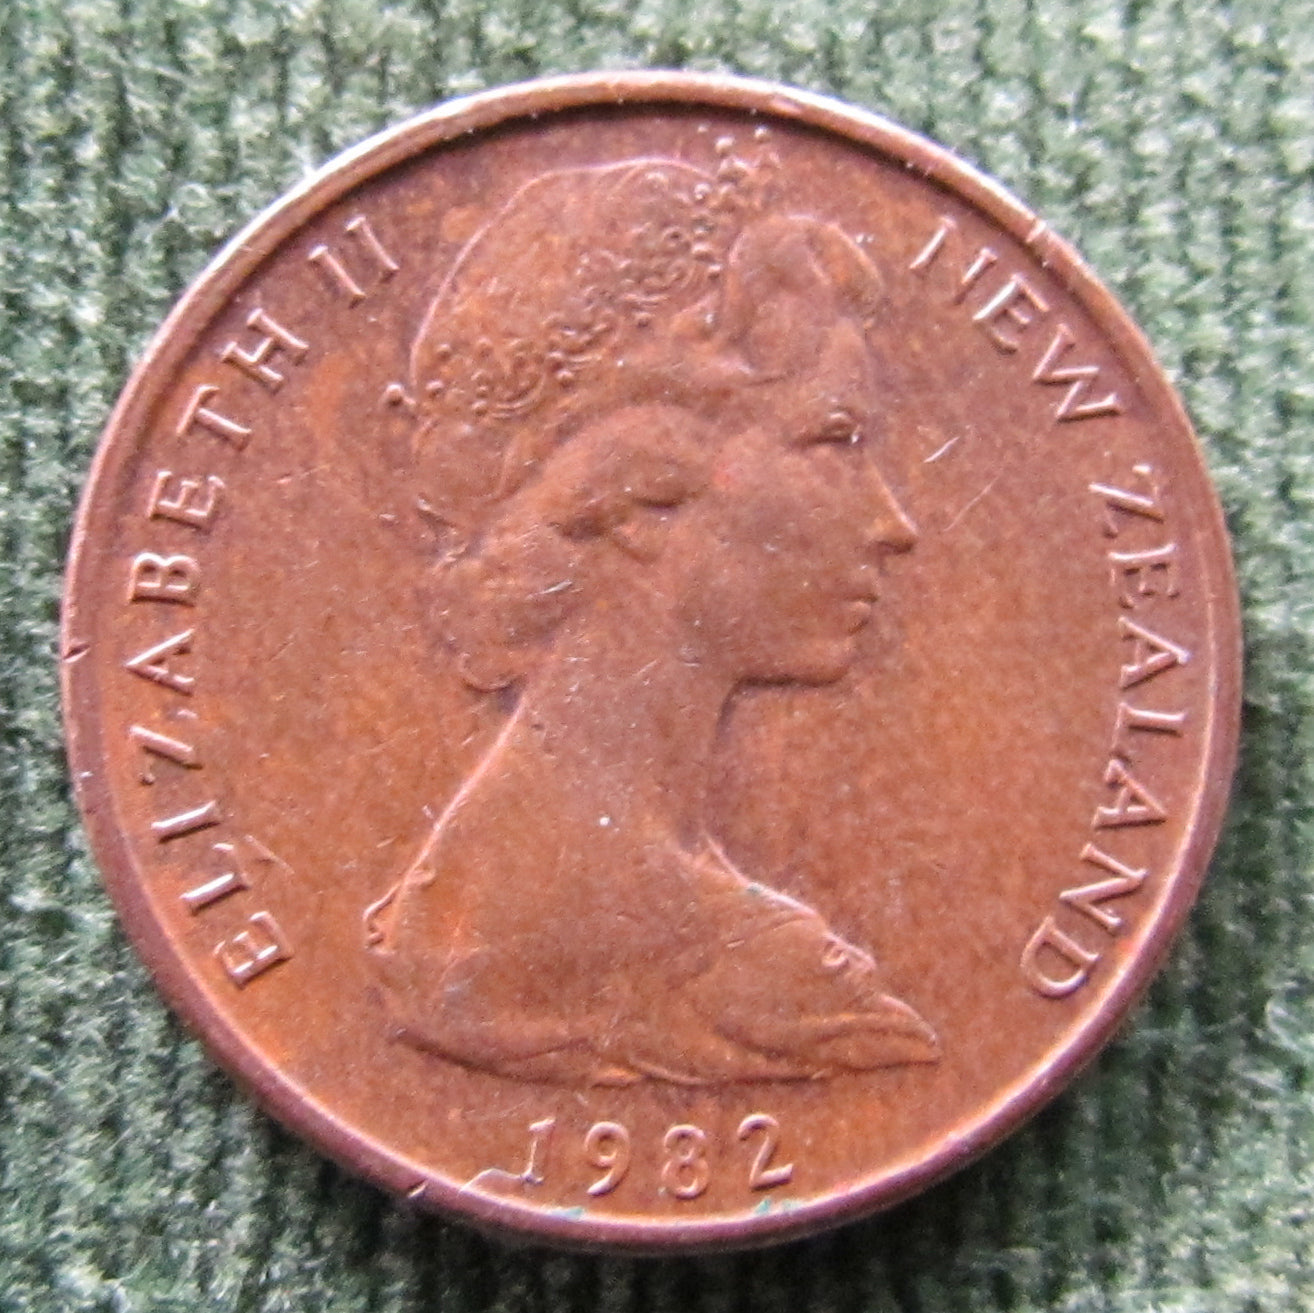 New Zealand 1982 1 Cent Queen Elizabeth Coin